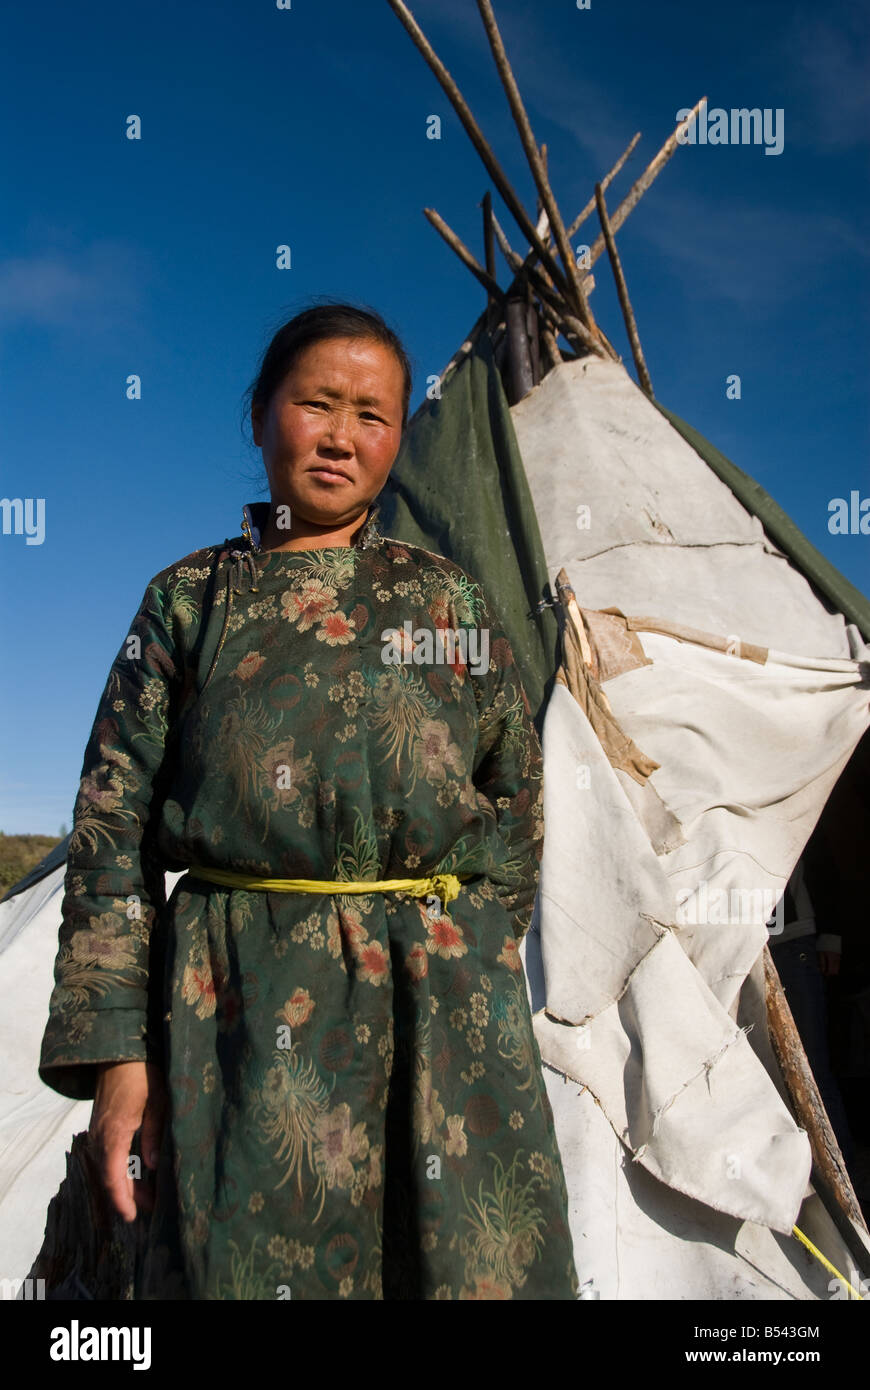 Tsaatan Woman outside the tepee Northern Mongolia Stock Photo